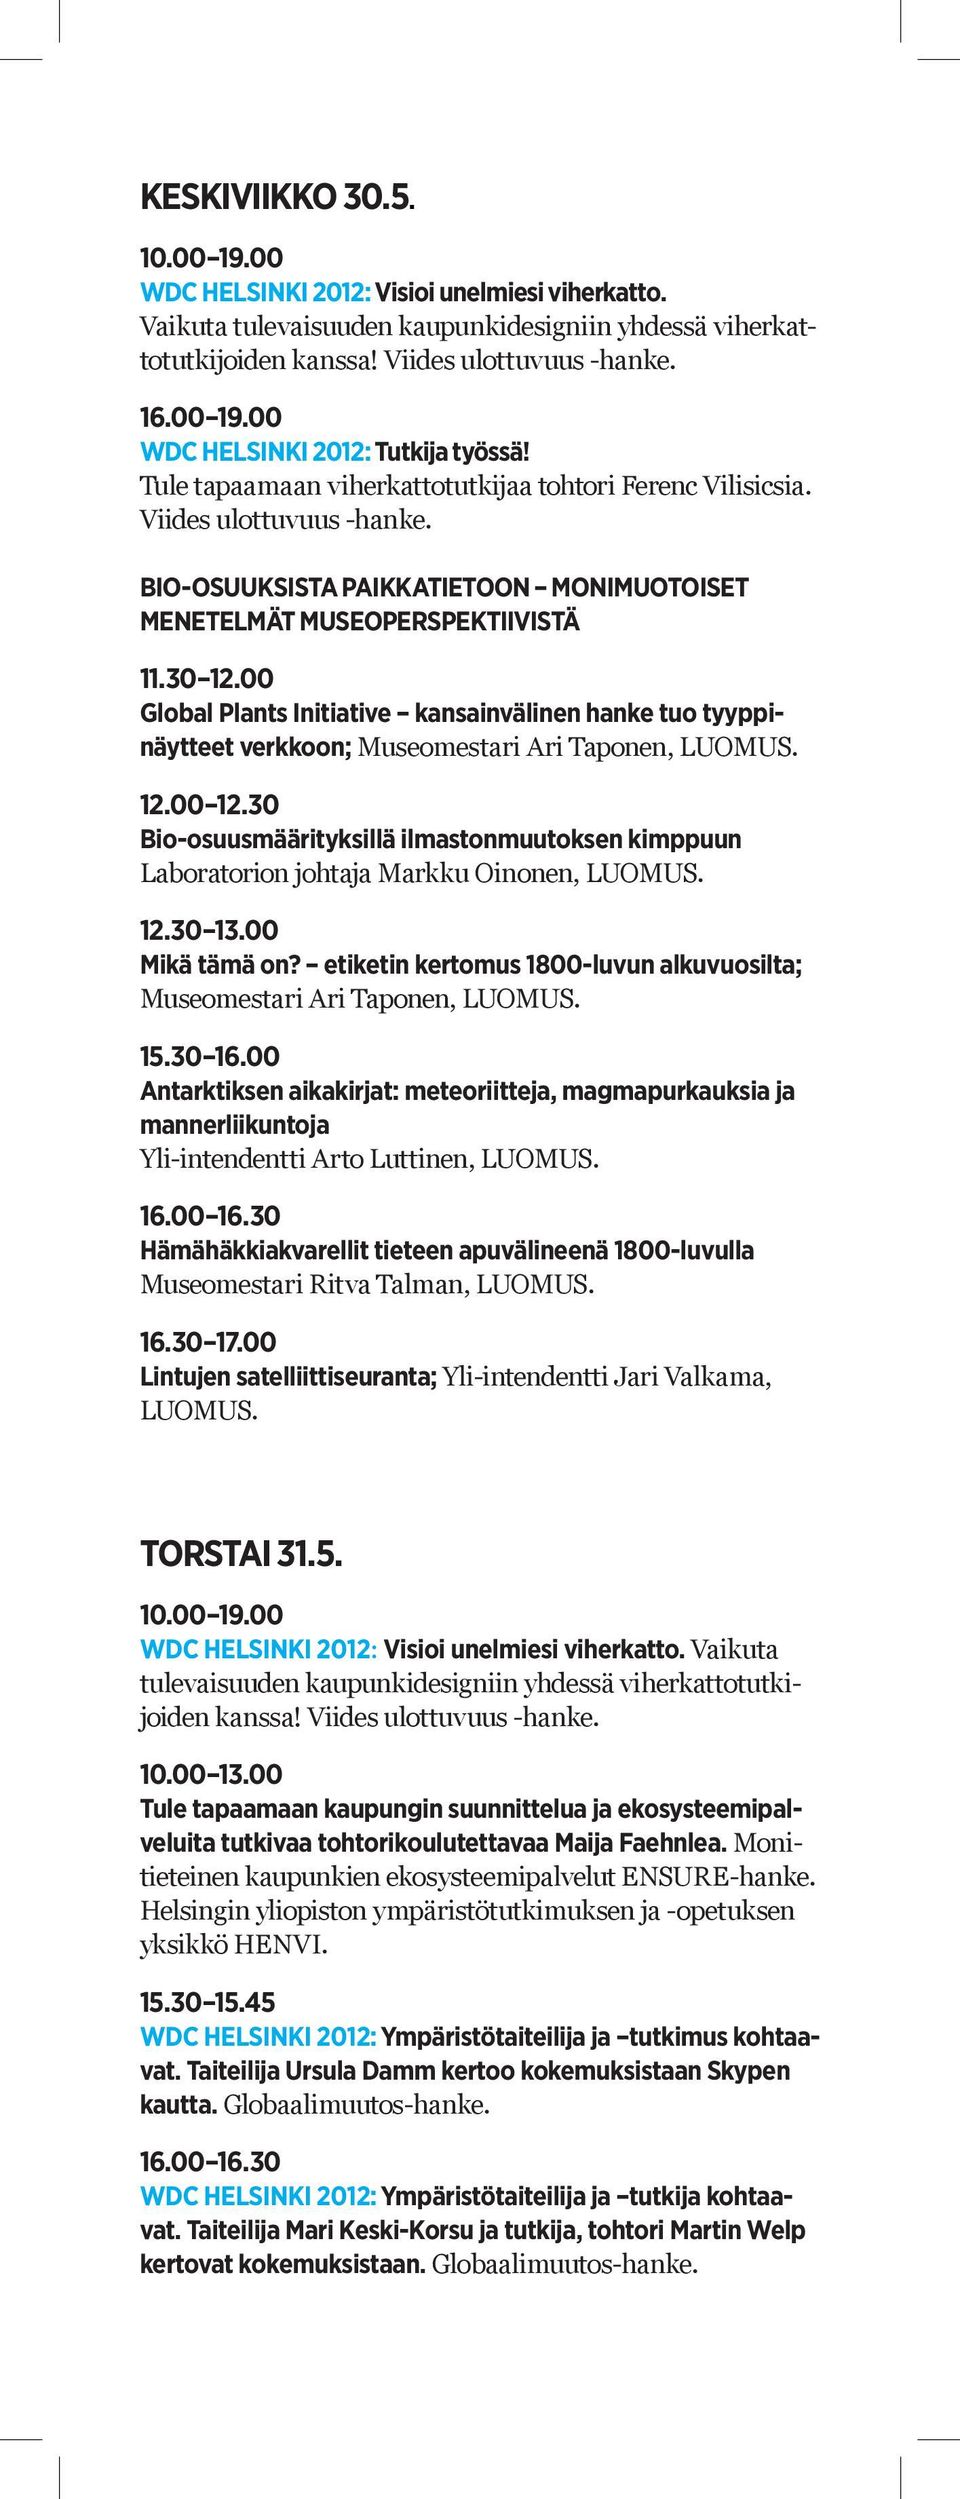 30 Bio-osuusmäärityksillä ilmastonmuutoksen kimppuun Laboratorion johtaja Markku Oinonen, LUOMUS. 12.30 13.00 Mikä tämä on? etiketin kertomus 1800-luvun alkuvuosilta; Museomestari Ari Taponen, LUOMUS.